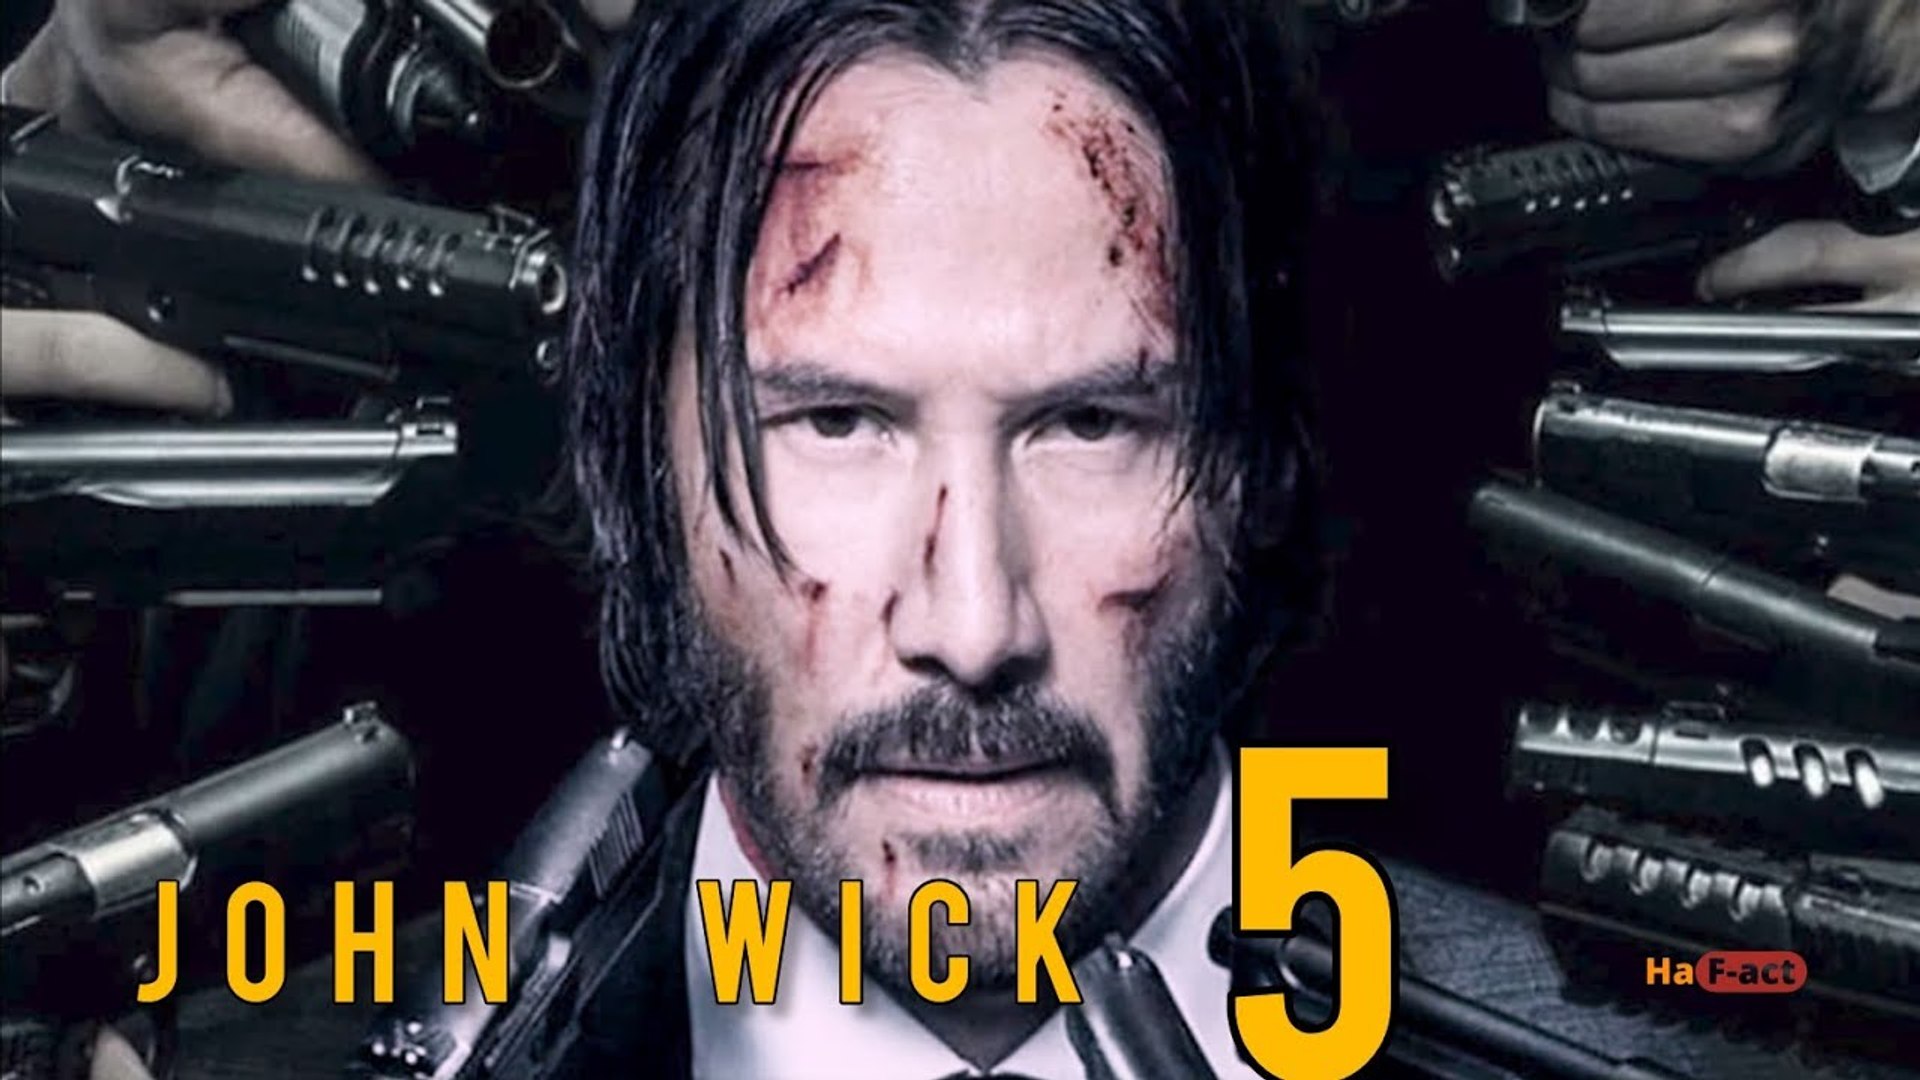 5 Clips of John Wick 2